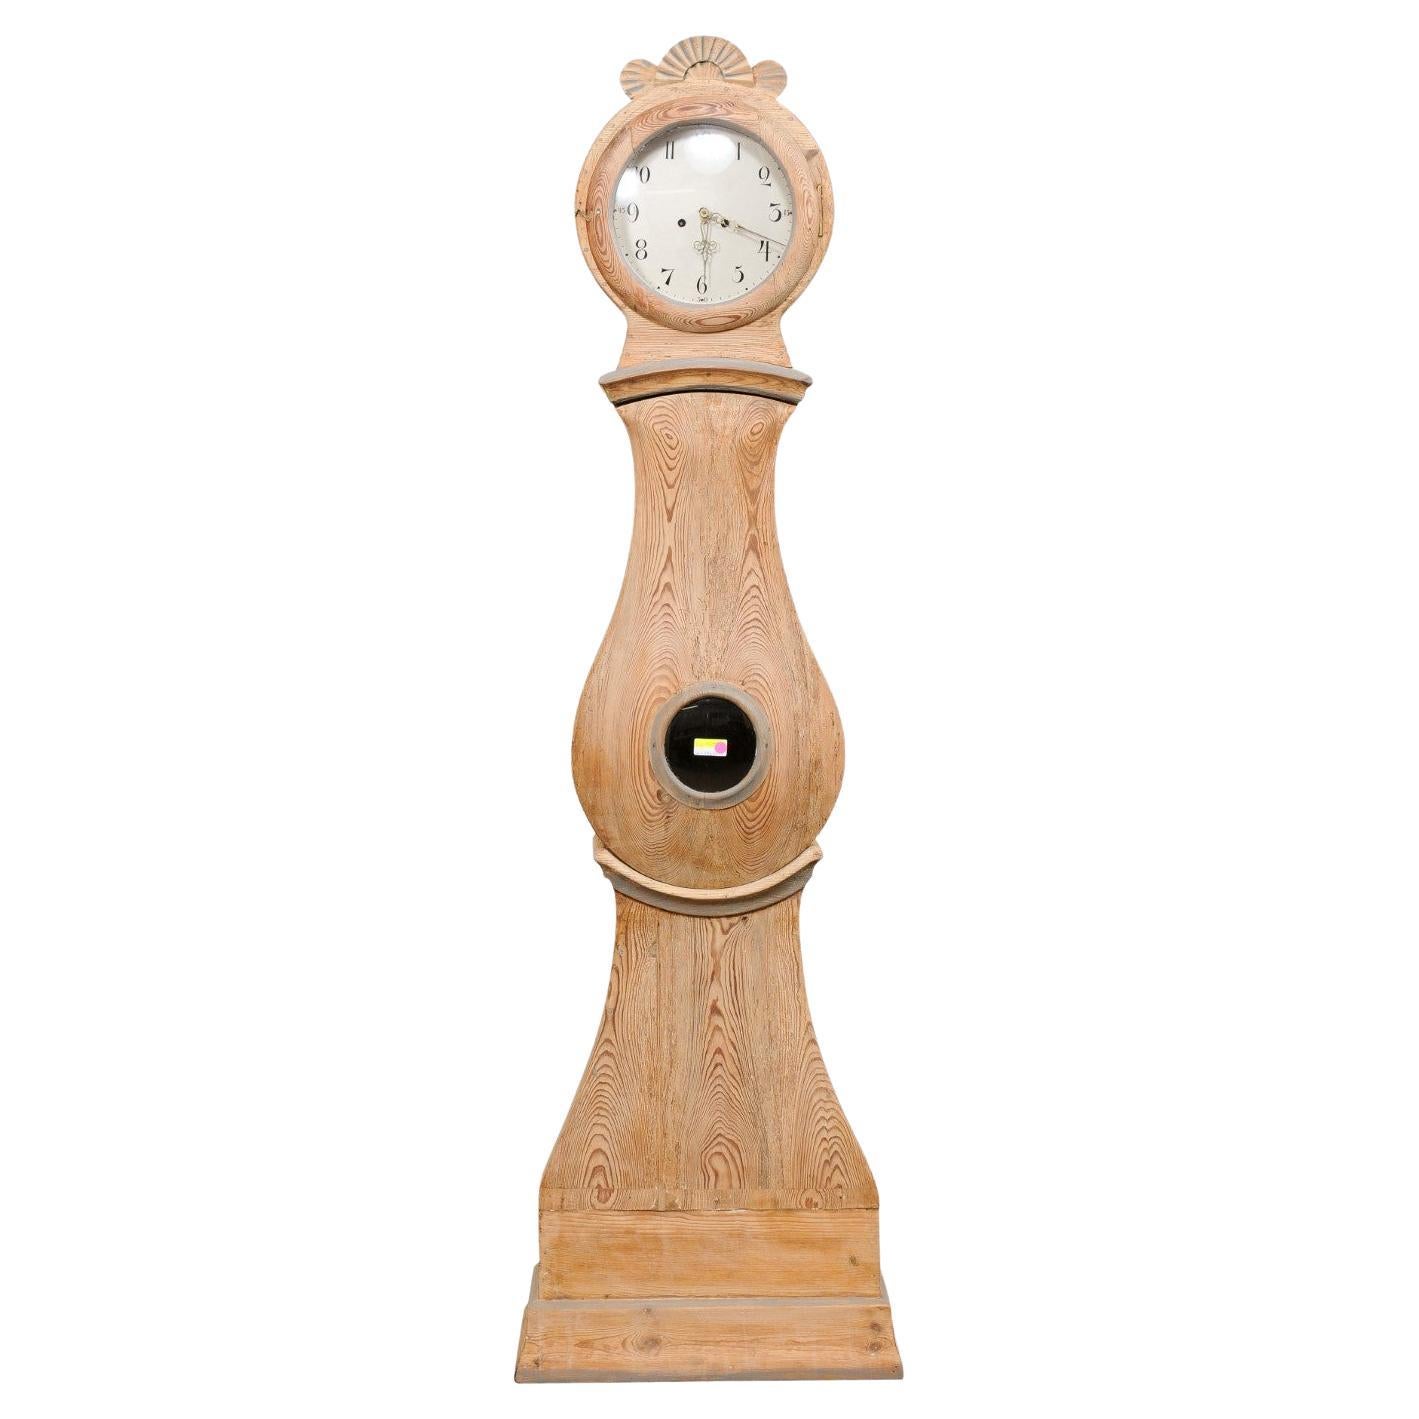 Horloge suédoise du 19e siècle à longues longueurs avec clochettes joliment oreilleres et belles proportions